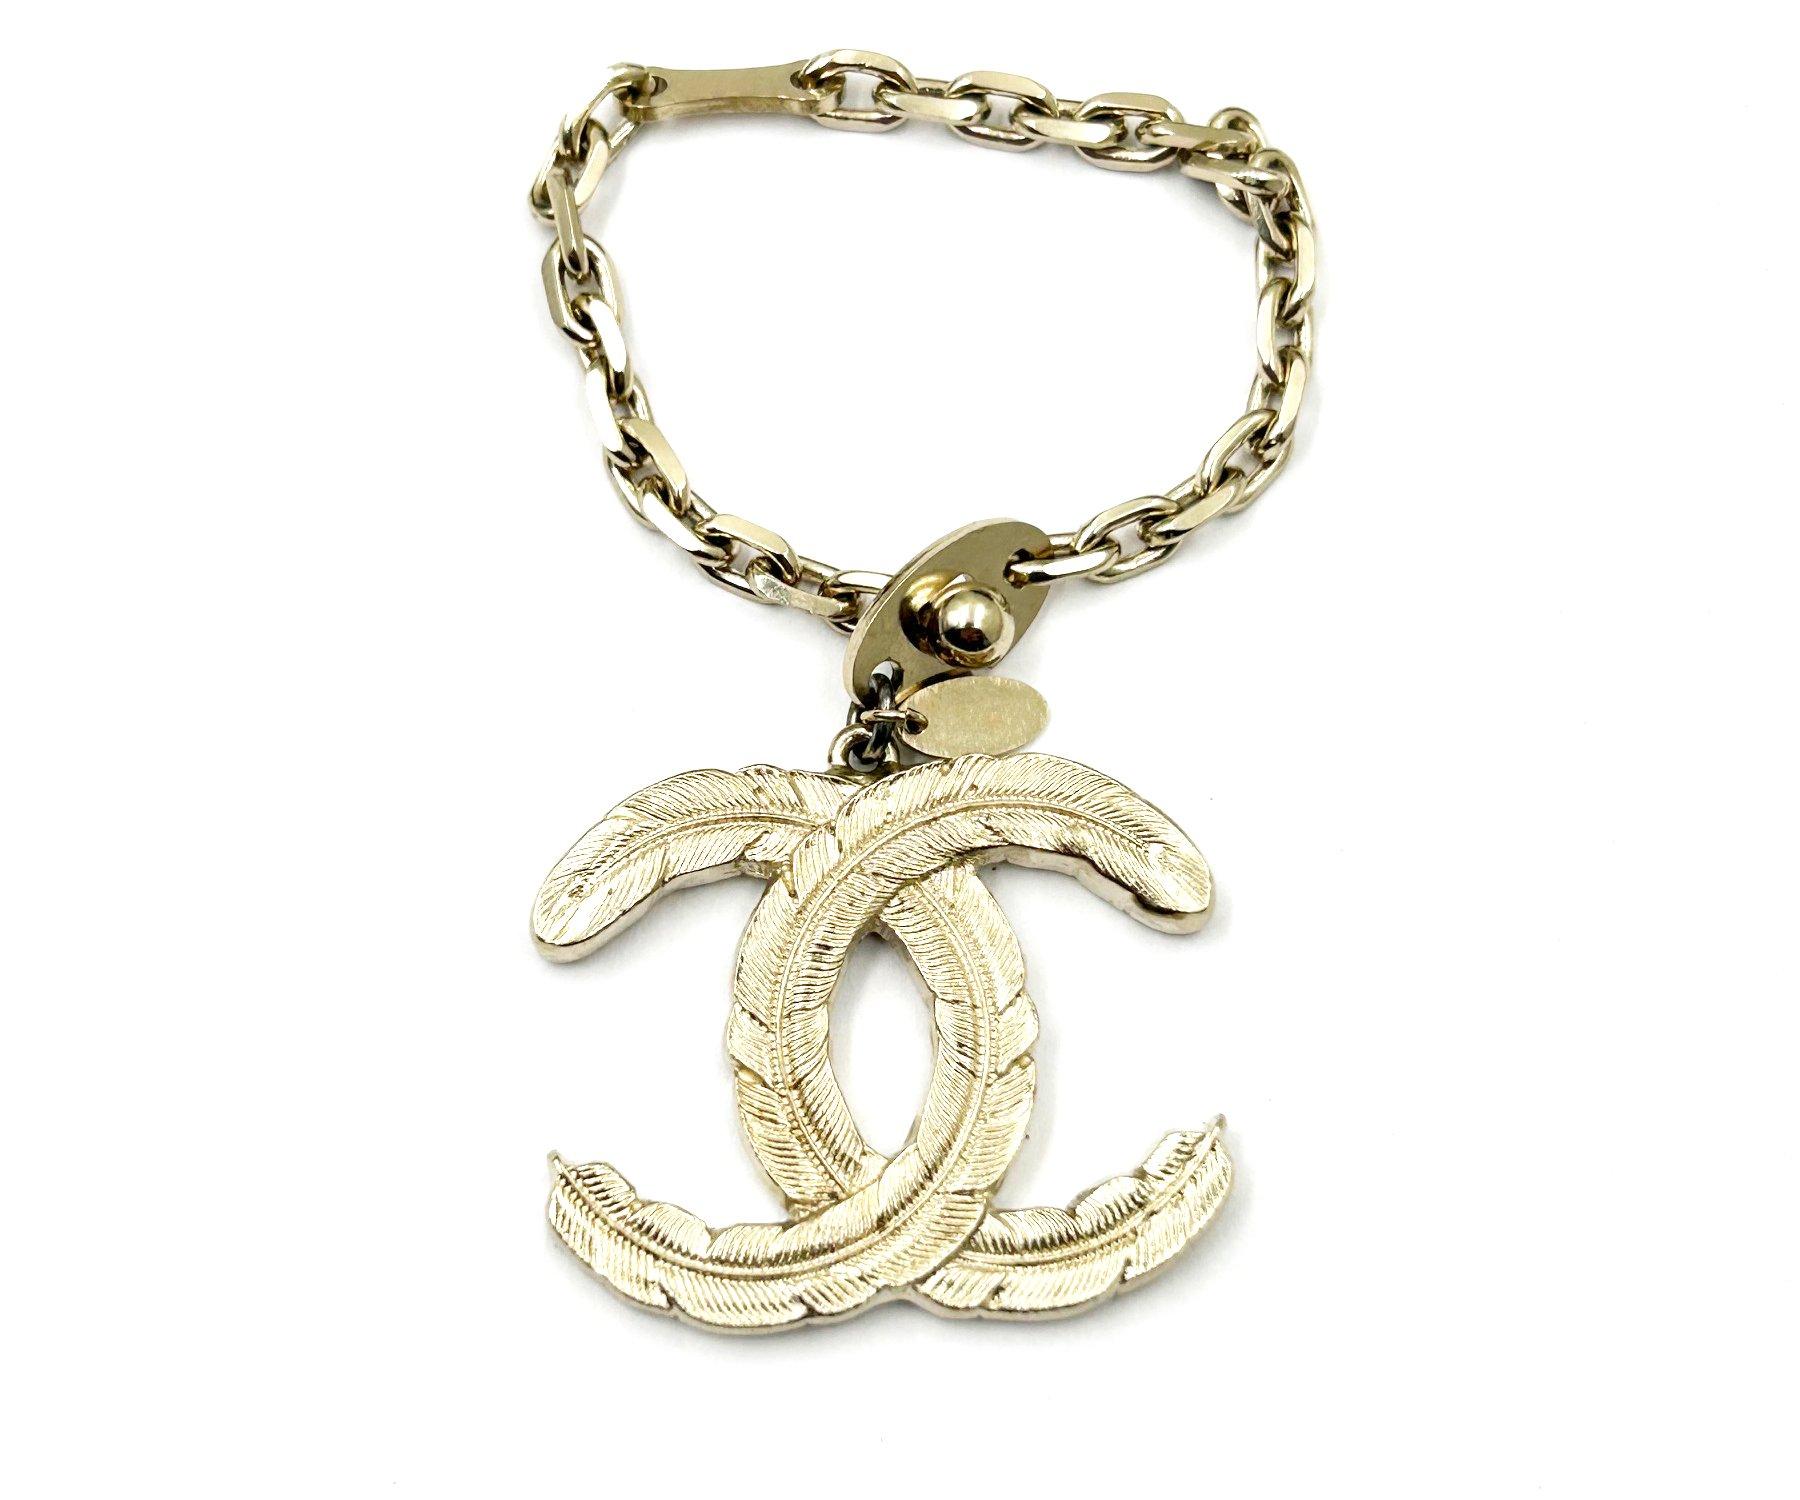 Chanel Light Gold CC Feather Large Pendentif Key Charm Key Chain

* Marqué 08
* Fabriqué en France

-Le pendentif mesure environ 1,5